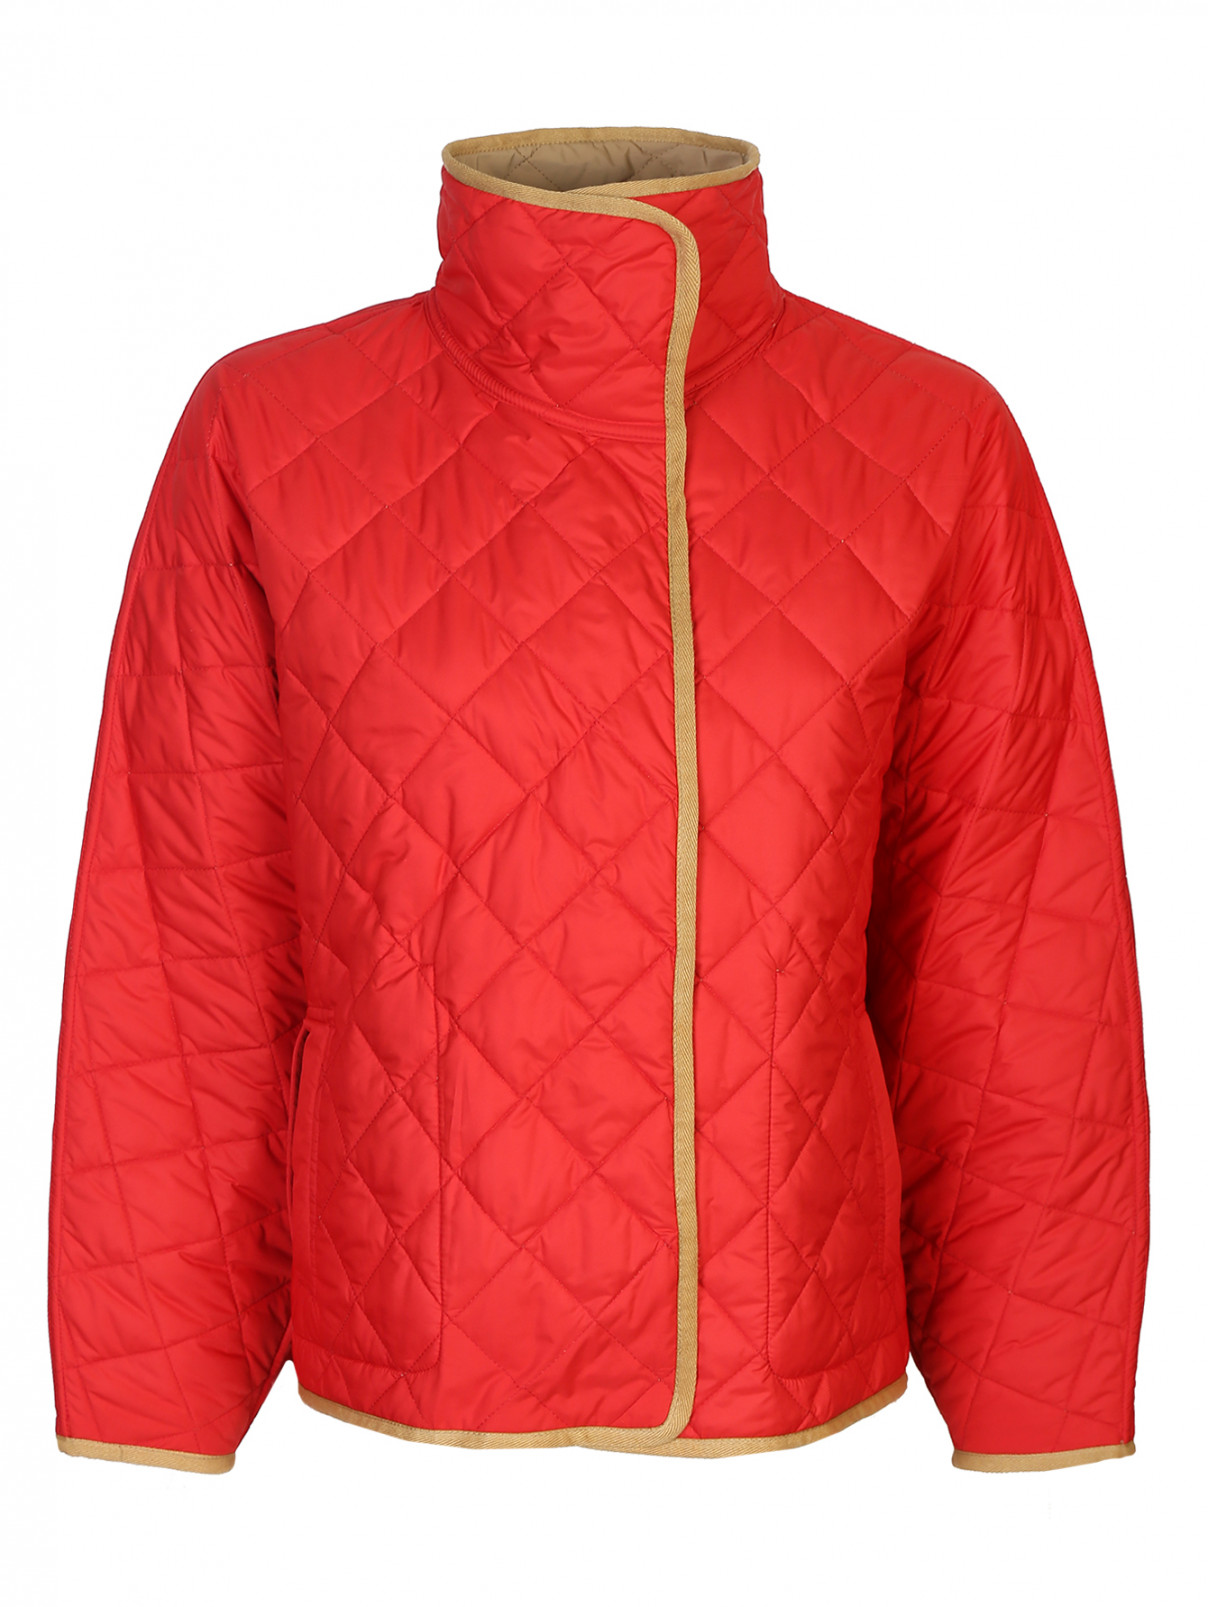 Куртка оверсайз стеганая Barbara Bui  –  Общий вид  – Цвет:  Красный